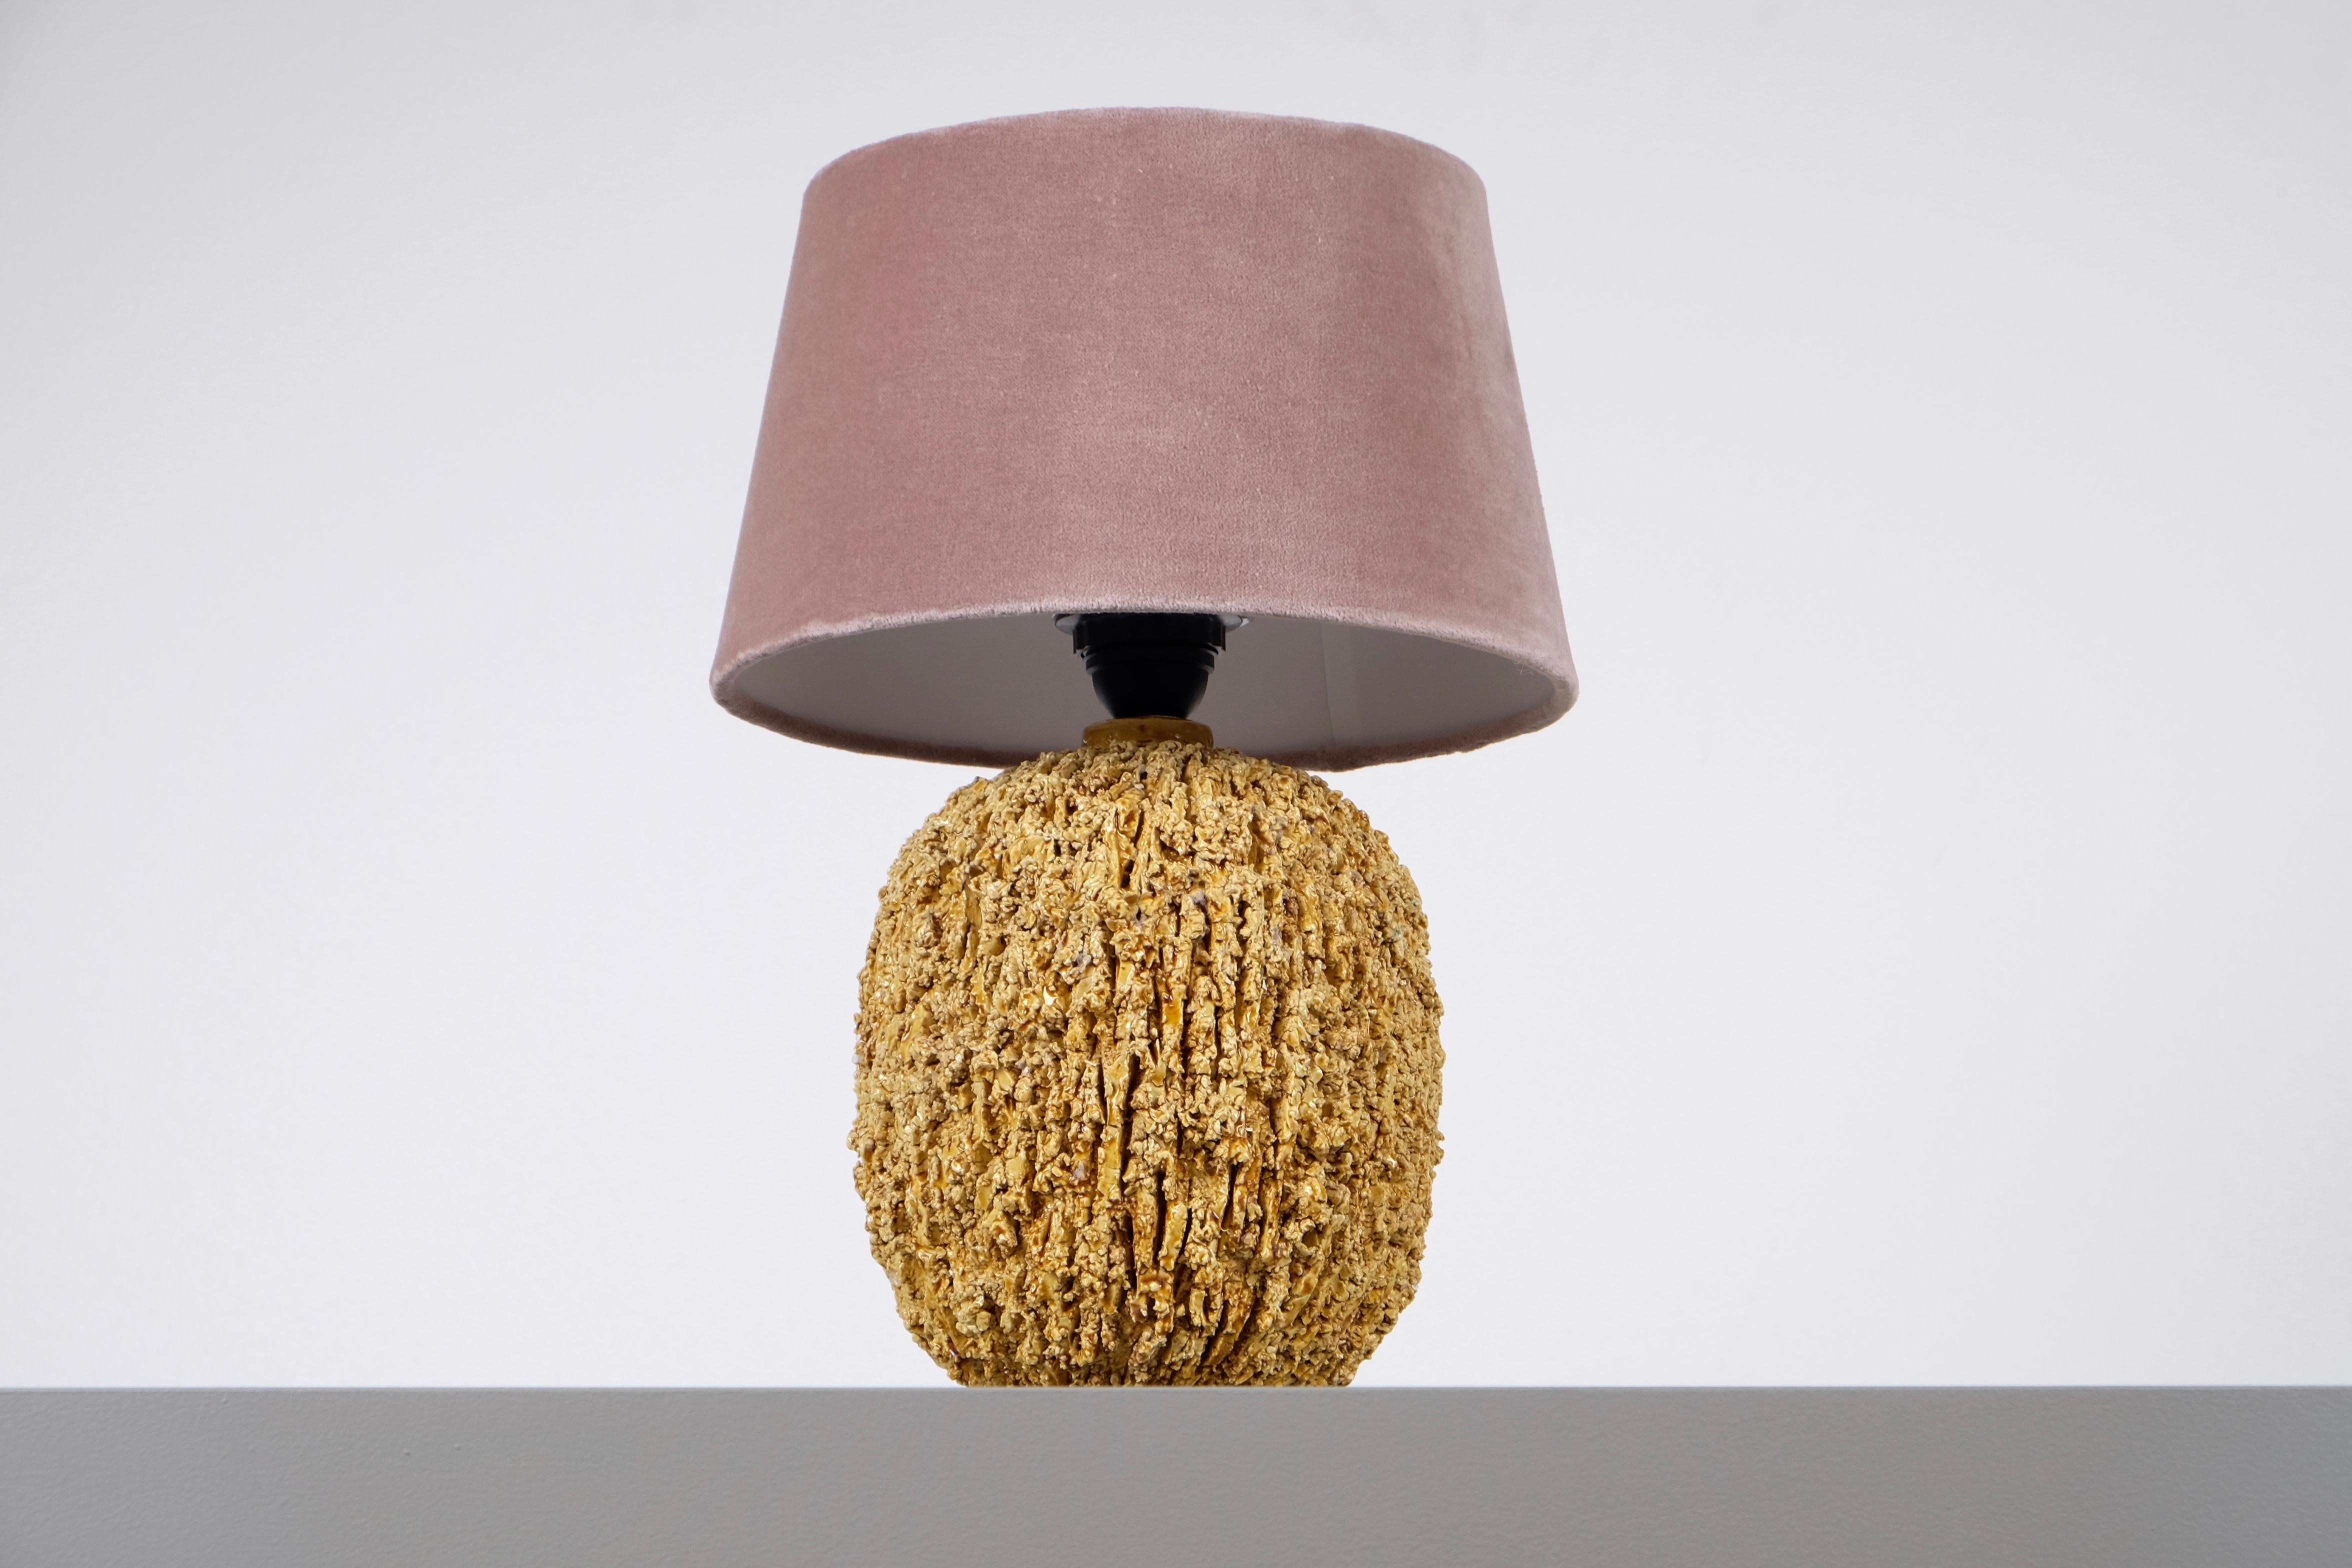 Lampe en céramique de forme bulbeuse par Gunnar Nylund, composée d'argile chamottée et émaillée d'une glaçure lustrée de couleur or. Produit par Rörstrand.
Estampillé. Mesures : Hauteur, abat-jour compris, 37 cm. Nouveau câblage.